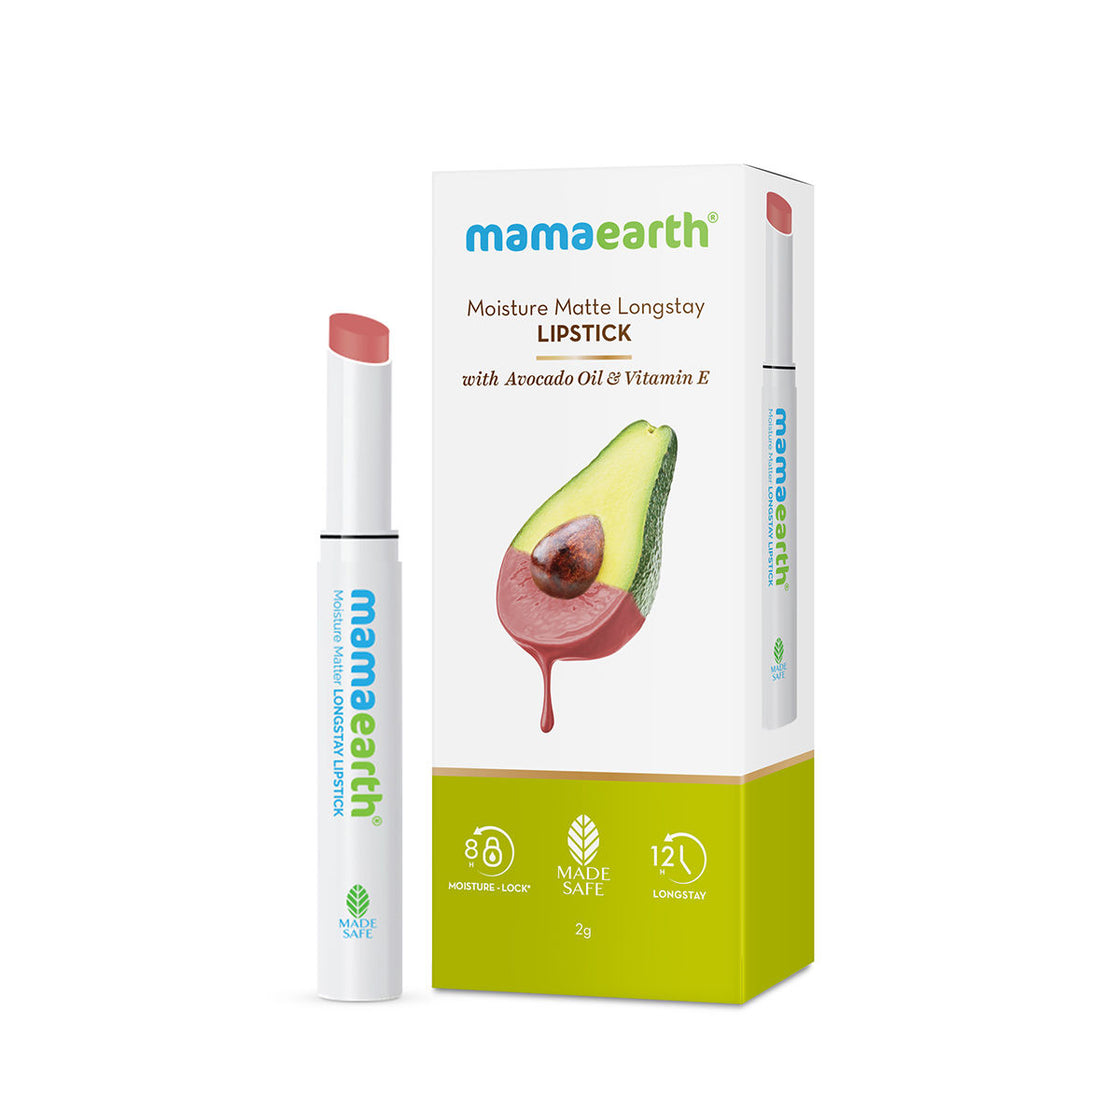 Mamaearth Moisture Matte Longstay Lipstick With Avocado Oil & Vitamin E-5